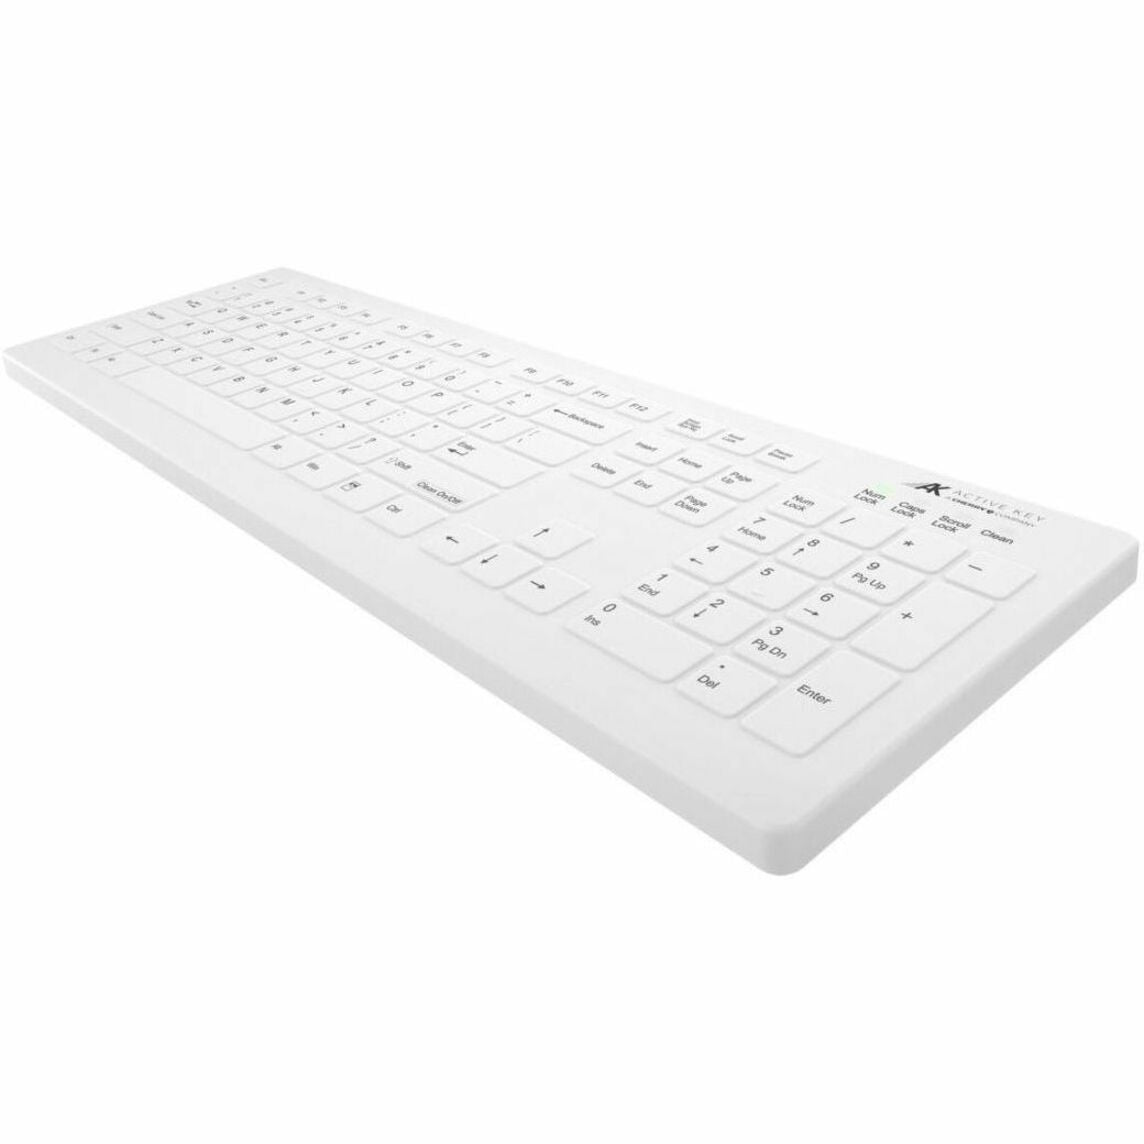 Active Key AK-C8112F-FUS-W/US AK-C8112 Tastatur kabellose Tastatur in voller Größe mit LED-Anzeige wasserabweisend ergonomisch und spritzwassergeschützt 